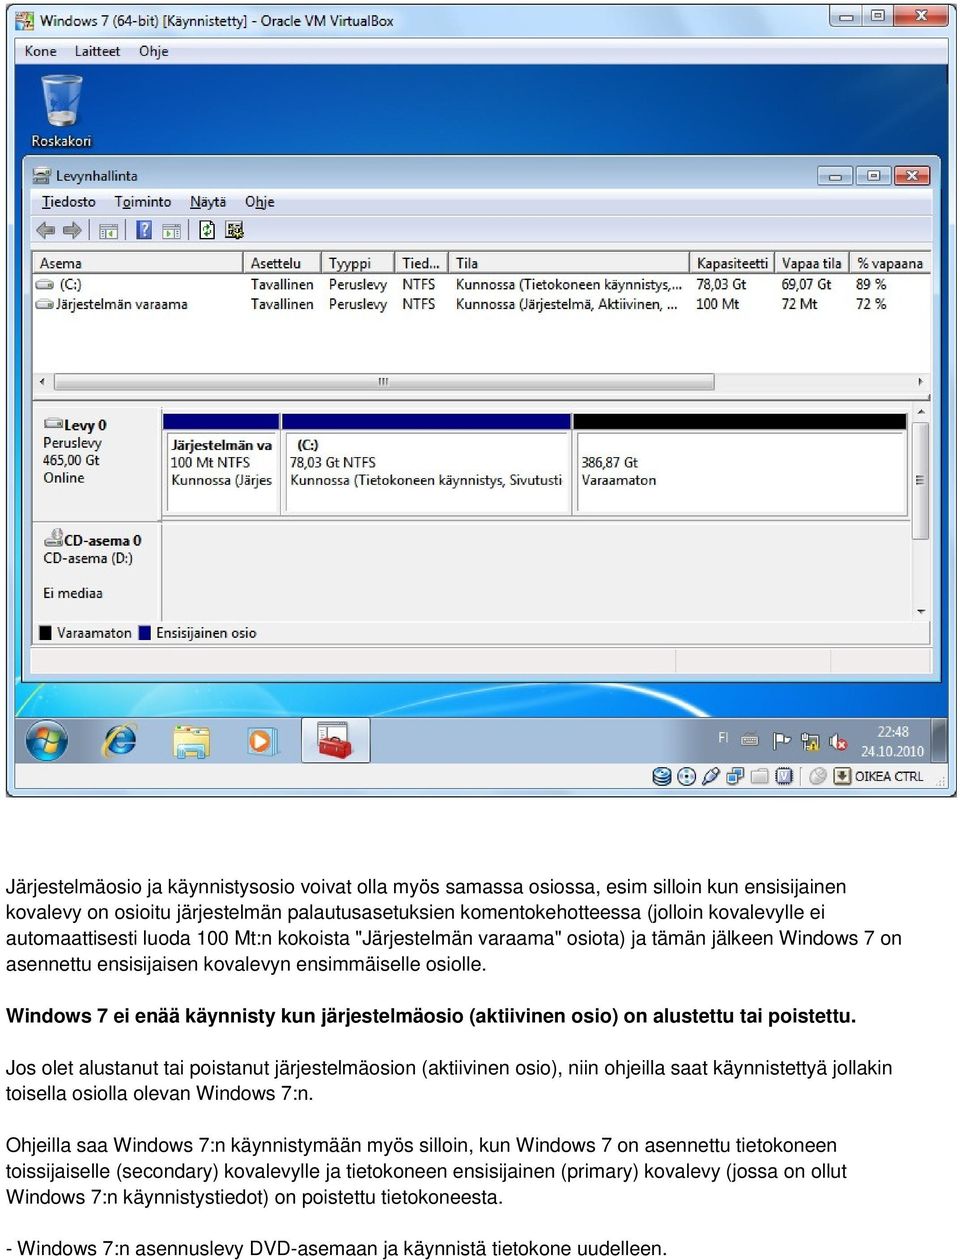 Windows 7 ei enää käynnisty kun järjestelmäosio (aktiivinen osio) on alustettu tai poistettu.